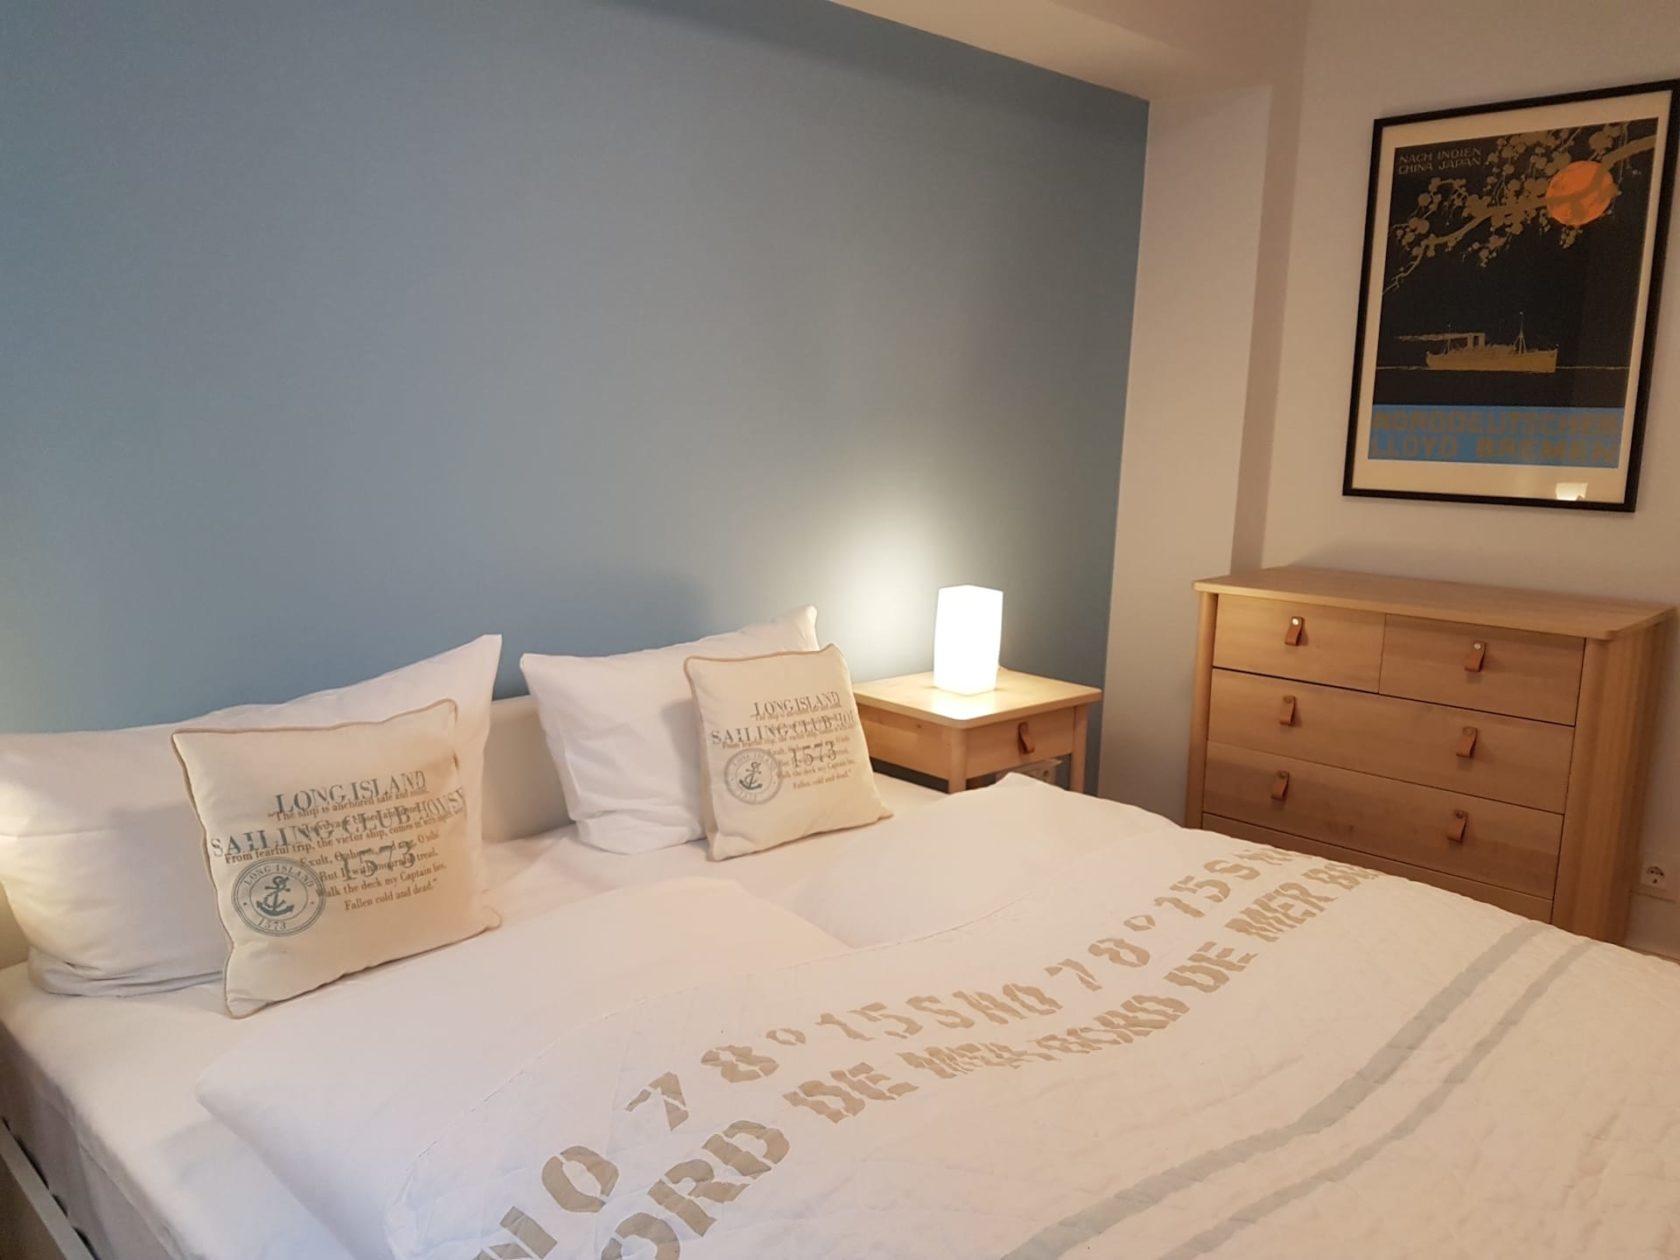 Drittes Schlafzimmer mit Doppelbett, blaue Wand, im Ferienhaus "Haus zwischen den Meeren" in Rantum auf Sylt